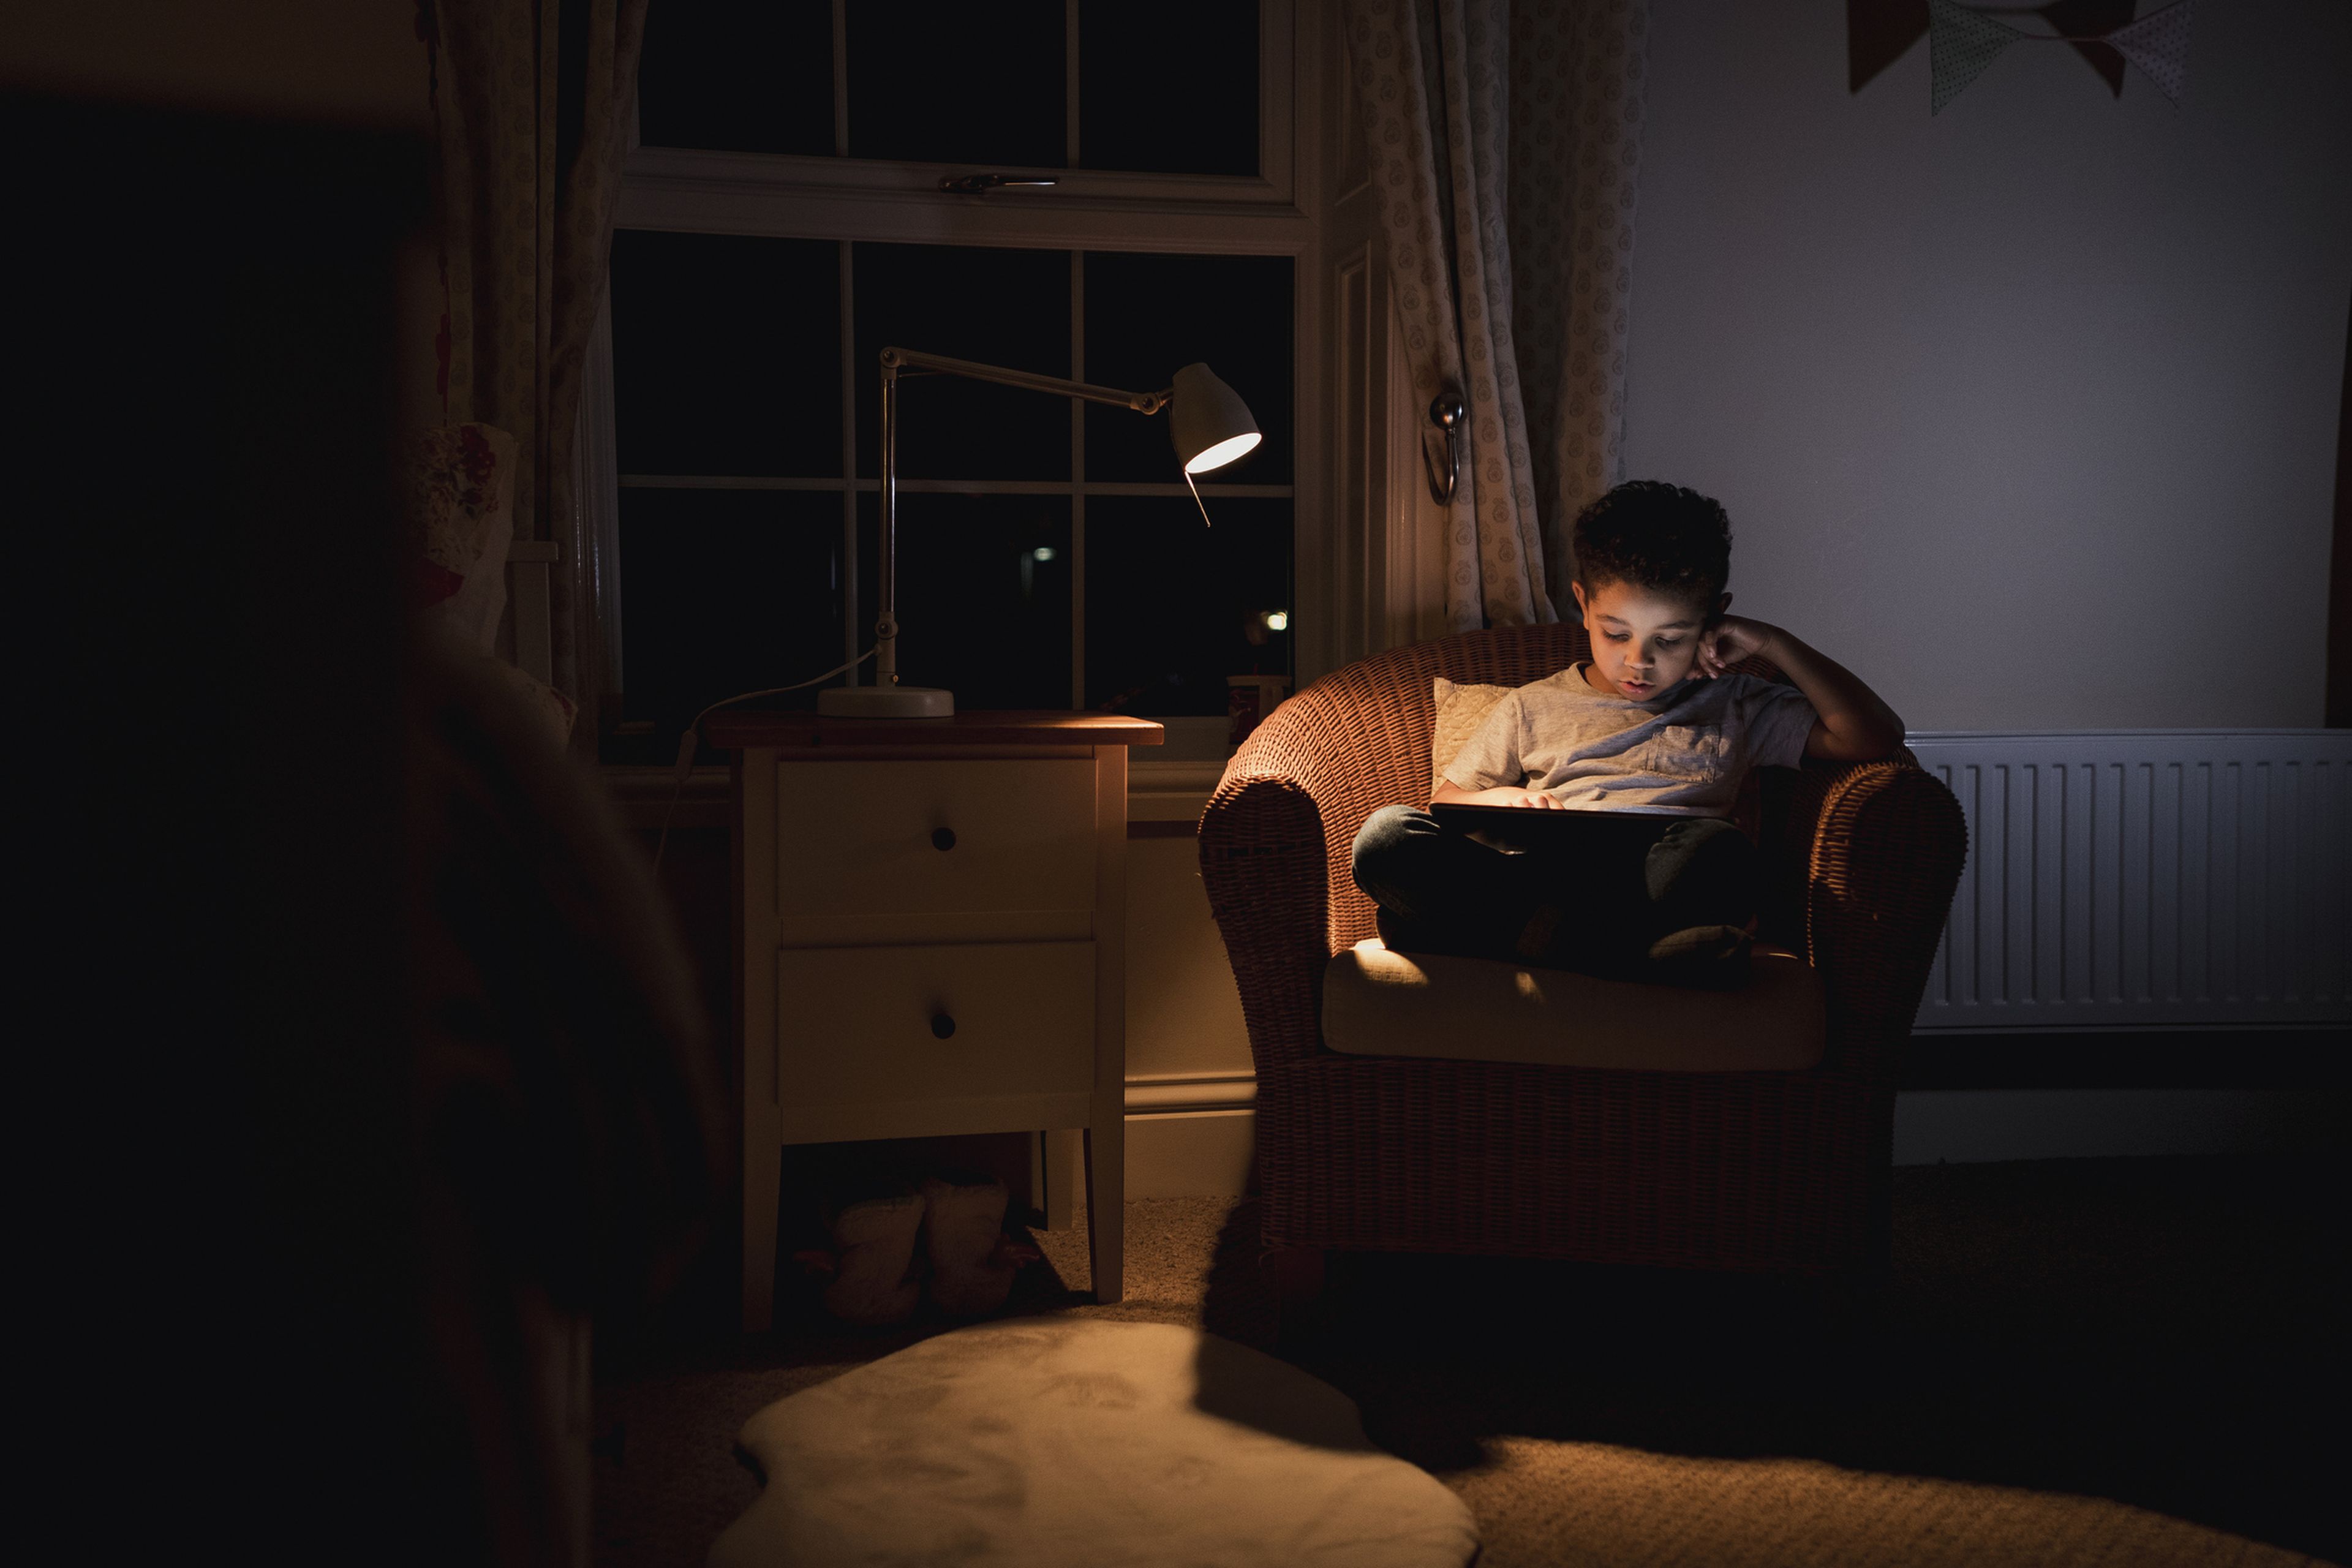 Un niño mira una tablet bajo la luz de una lámpara.